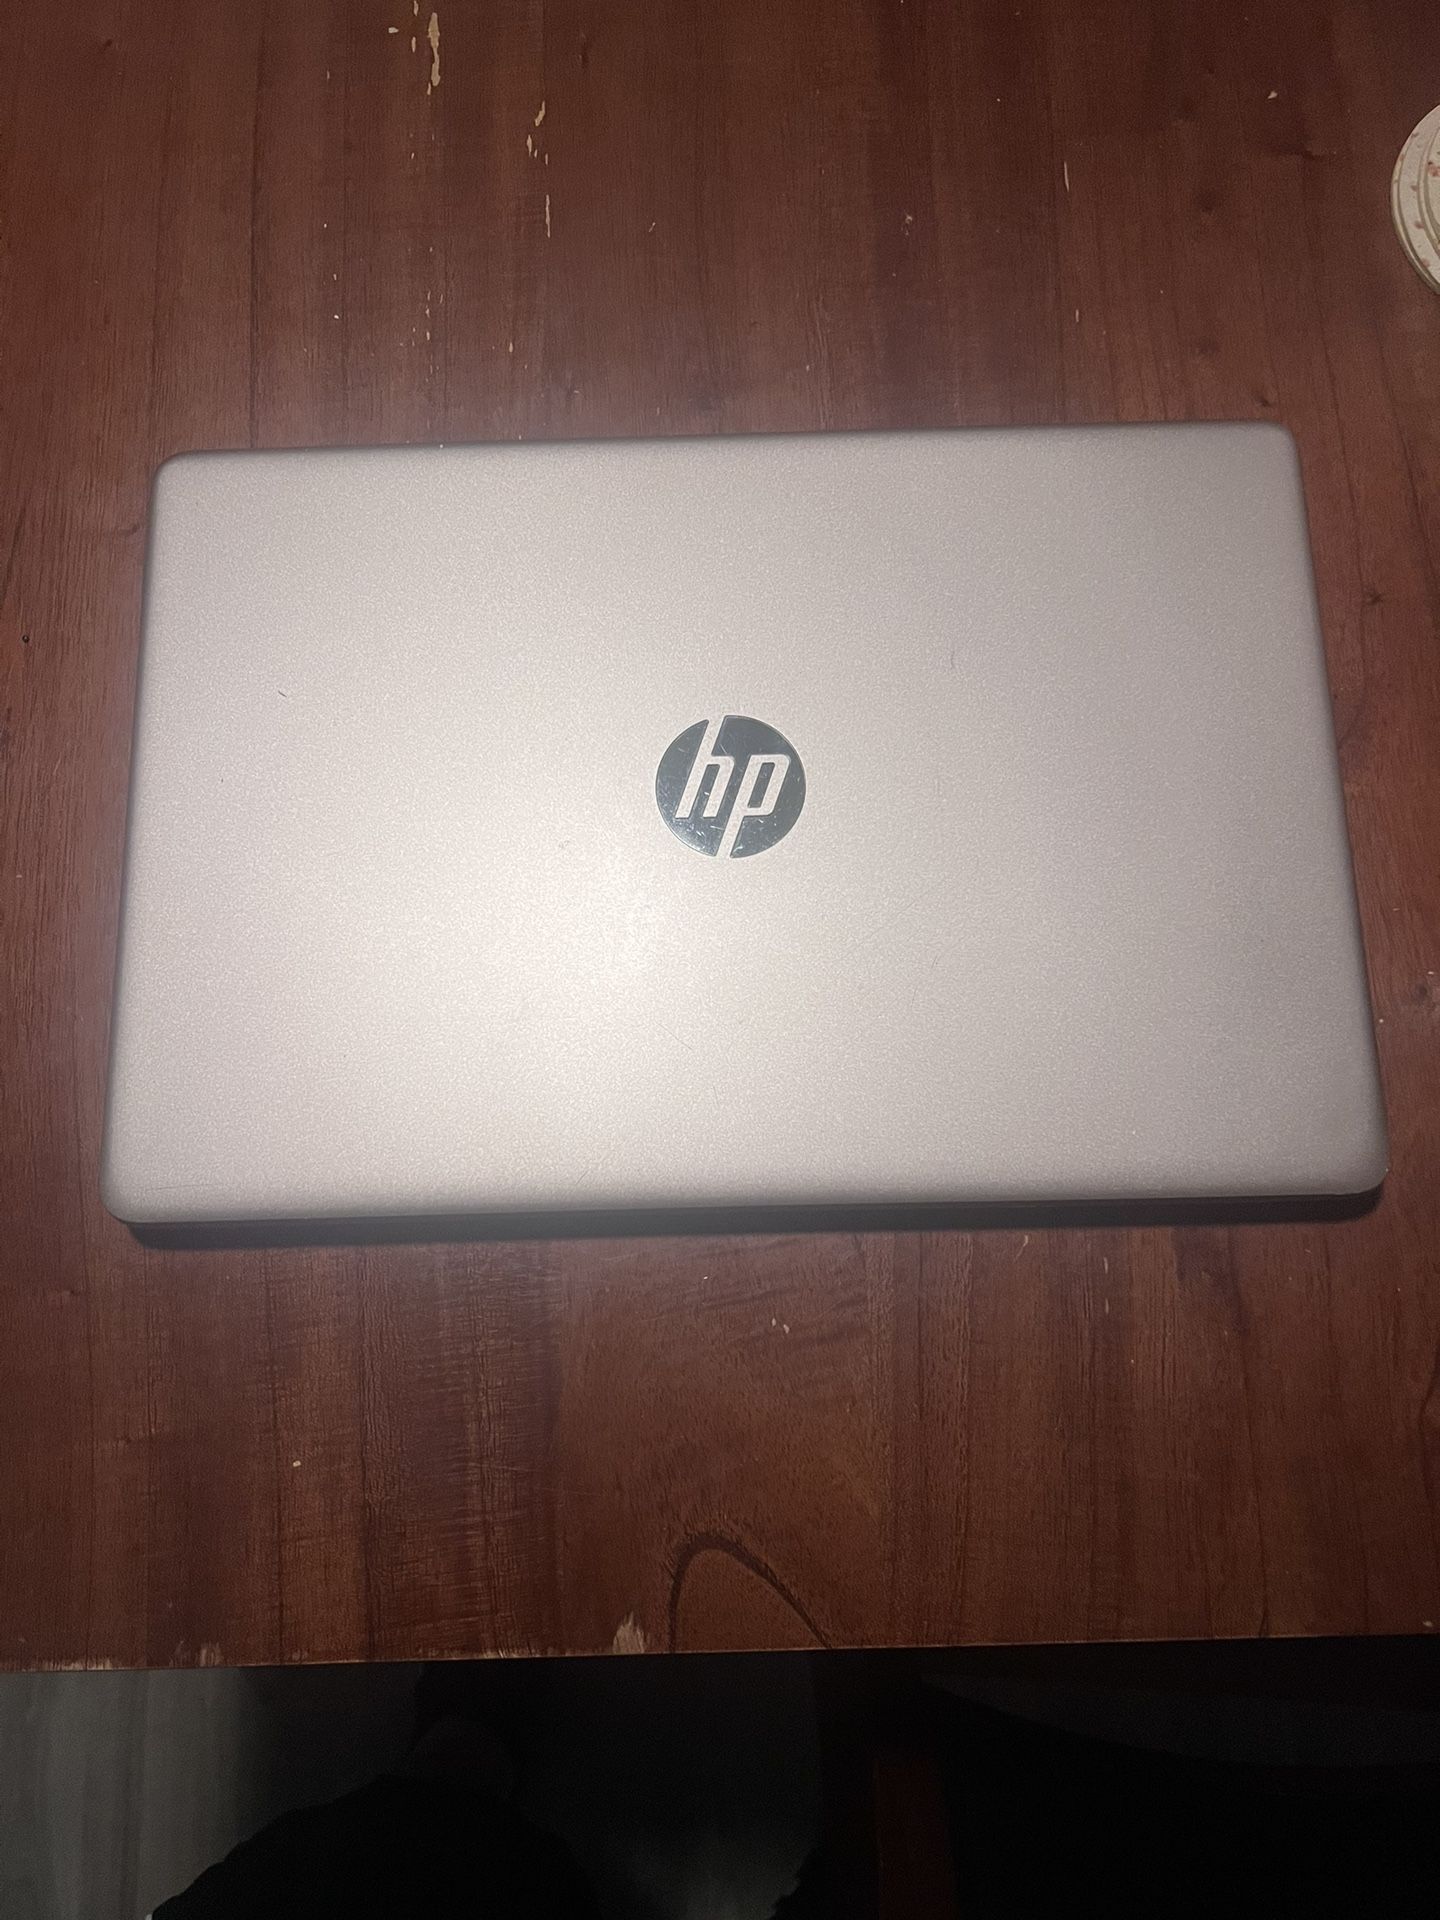 HP laptop Rose Gold